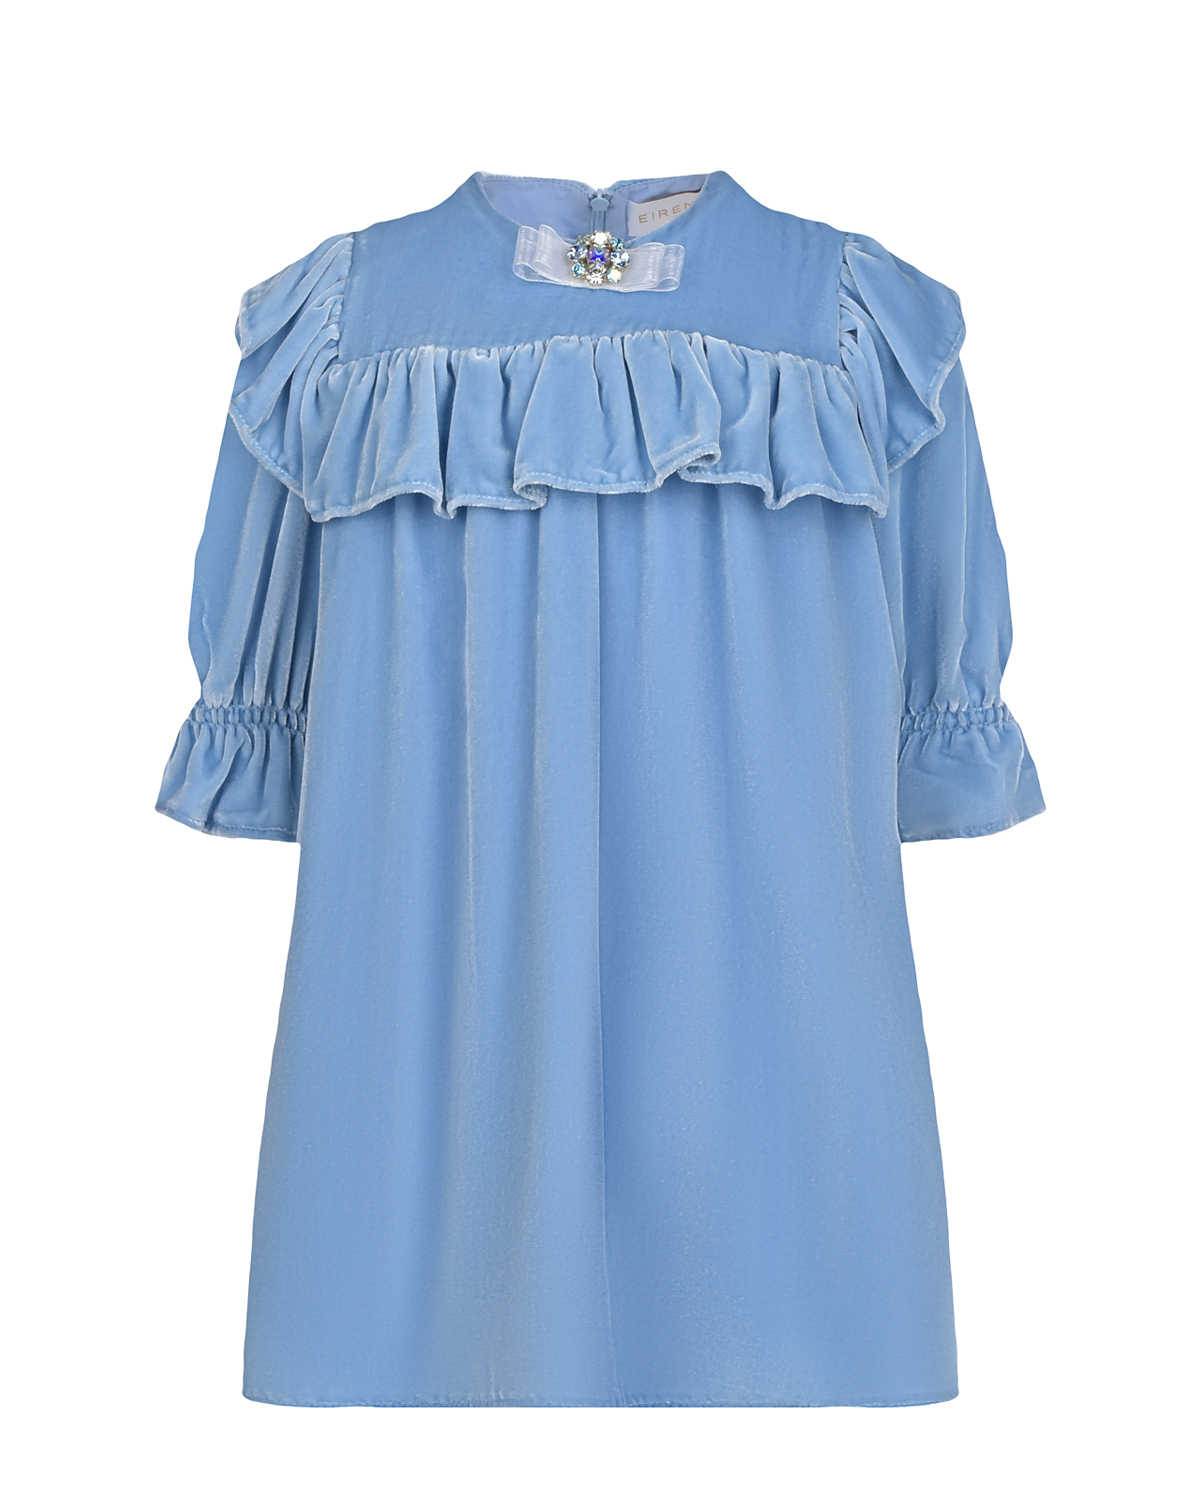 Бархатное платье голубого цвета Eirene детское, размер 104 - фото 1